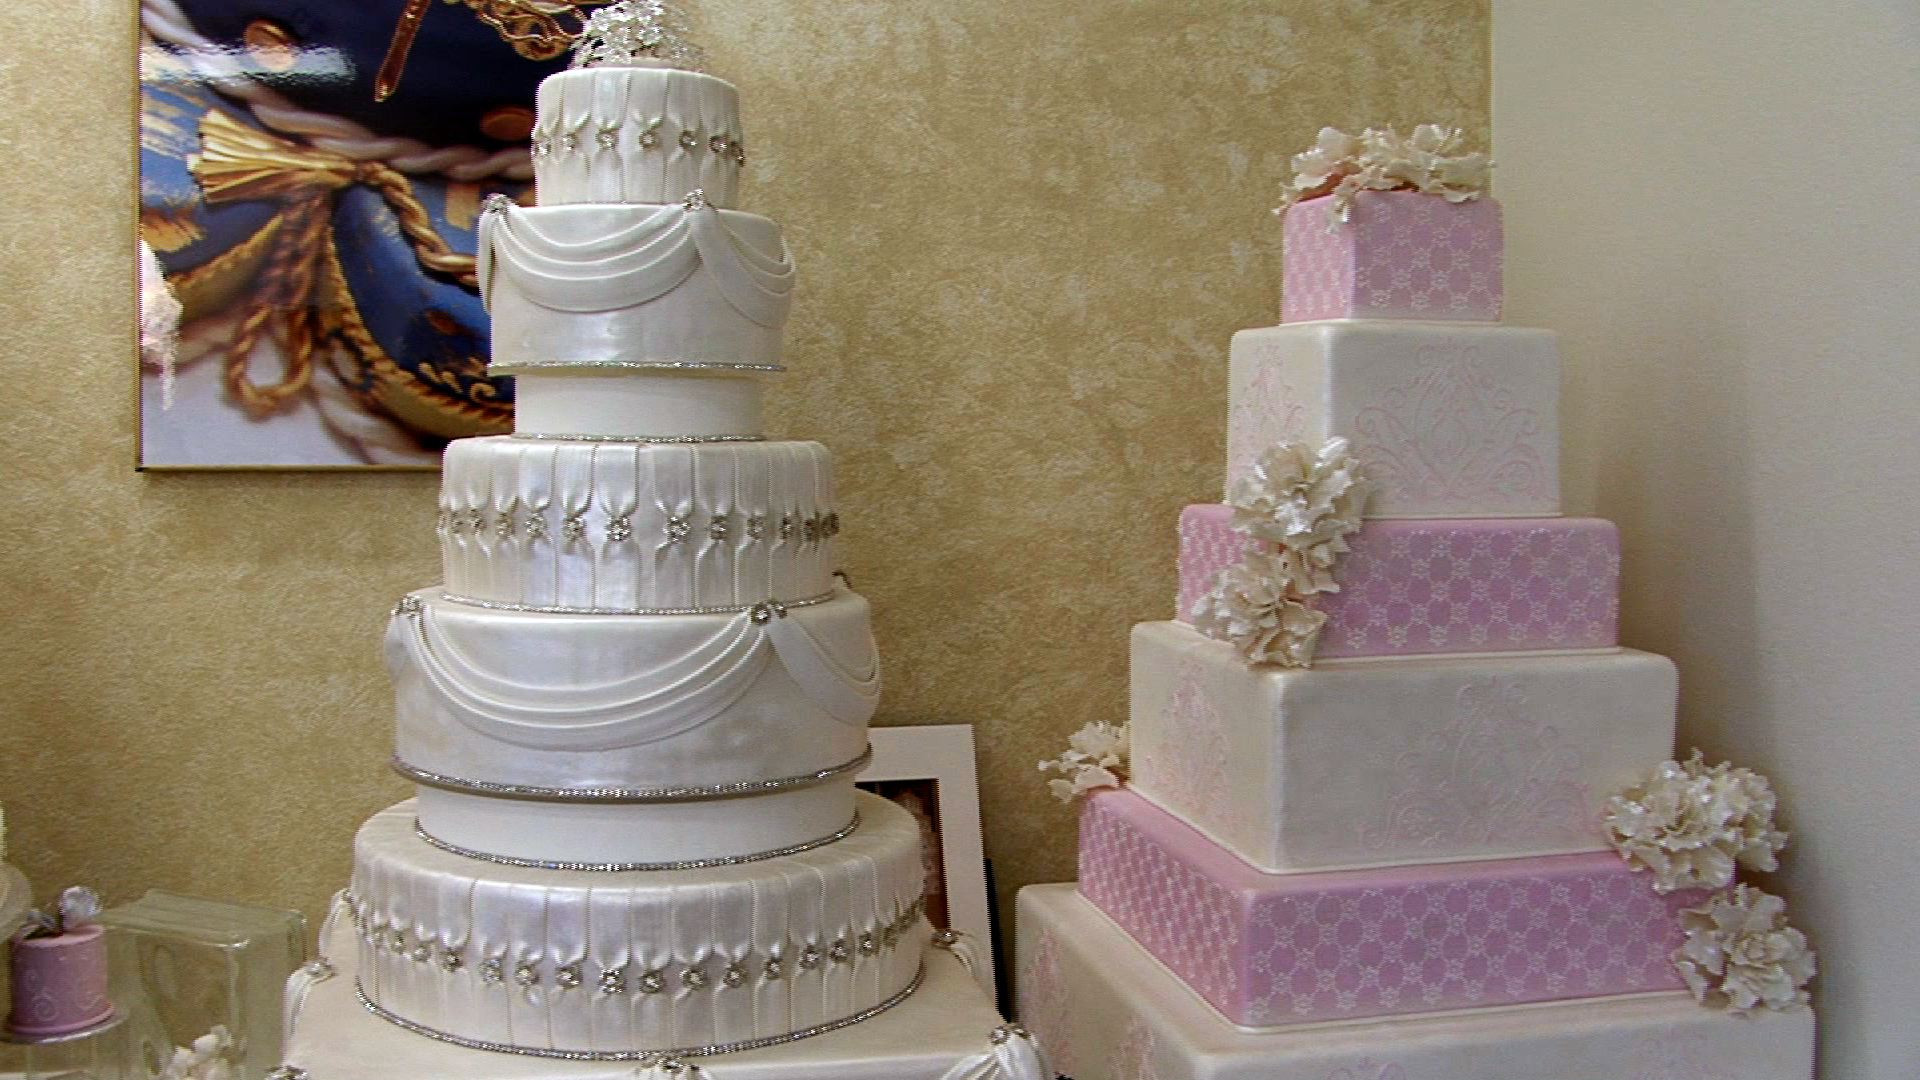 Susie Cakes Wedding Cake
 Susie’s Cakes ‘Take the Cake’ at Houstonian Weddings